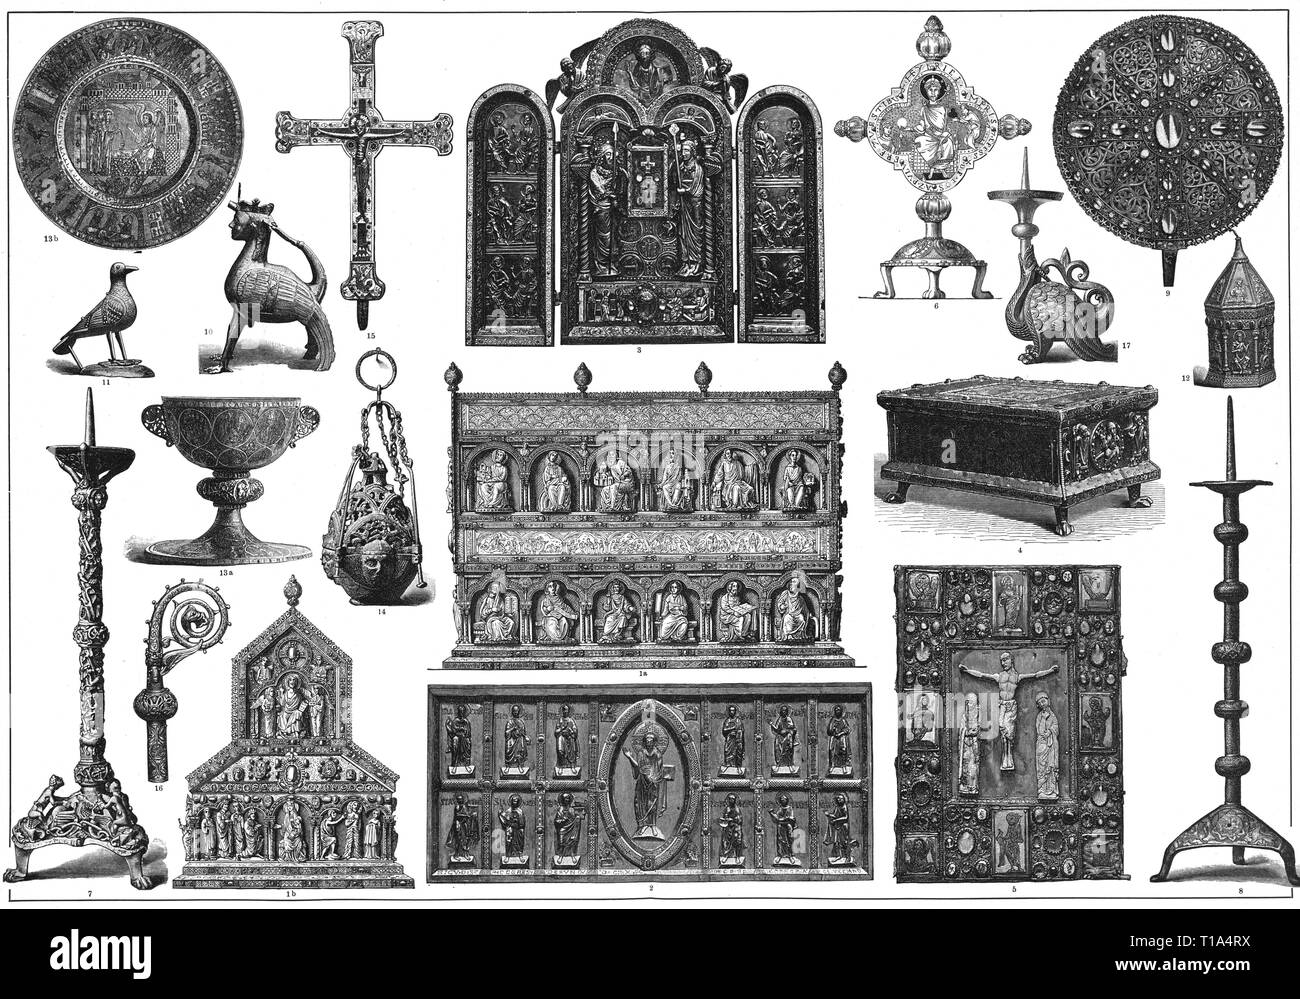 La religion, le christianisme, la liturgie, les appareils liturgic du Moyen-Âge, gravure sur bois, 19e siècle, l'artiste n'a pas d'auteur pour être effacé Banque D'Images